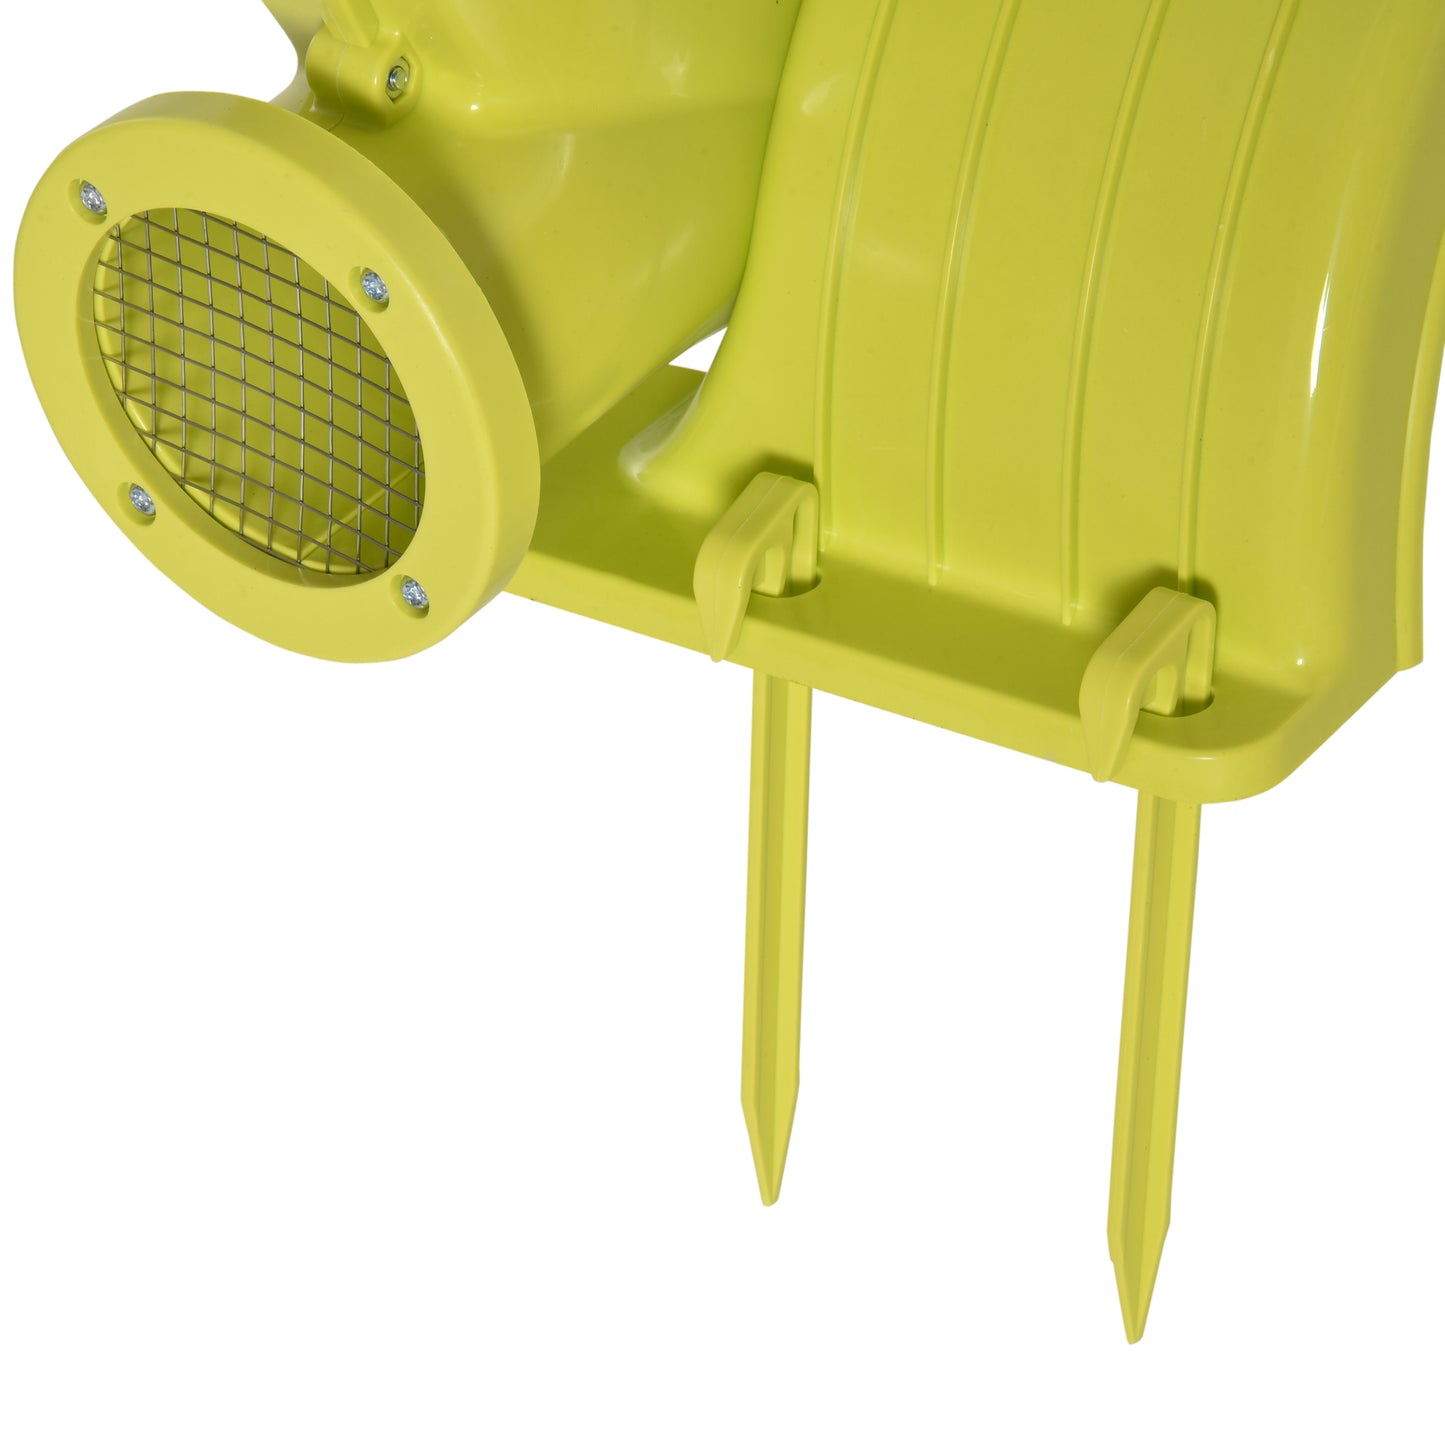 Outsunny Soplador Eléctrico de 450W para Castillo Hinchable Ventilador de Aire Industrial para Juguetes Inflables 35x26x33,5cm Amarillo y Verde